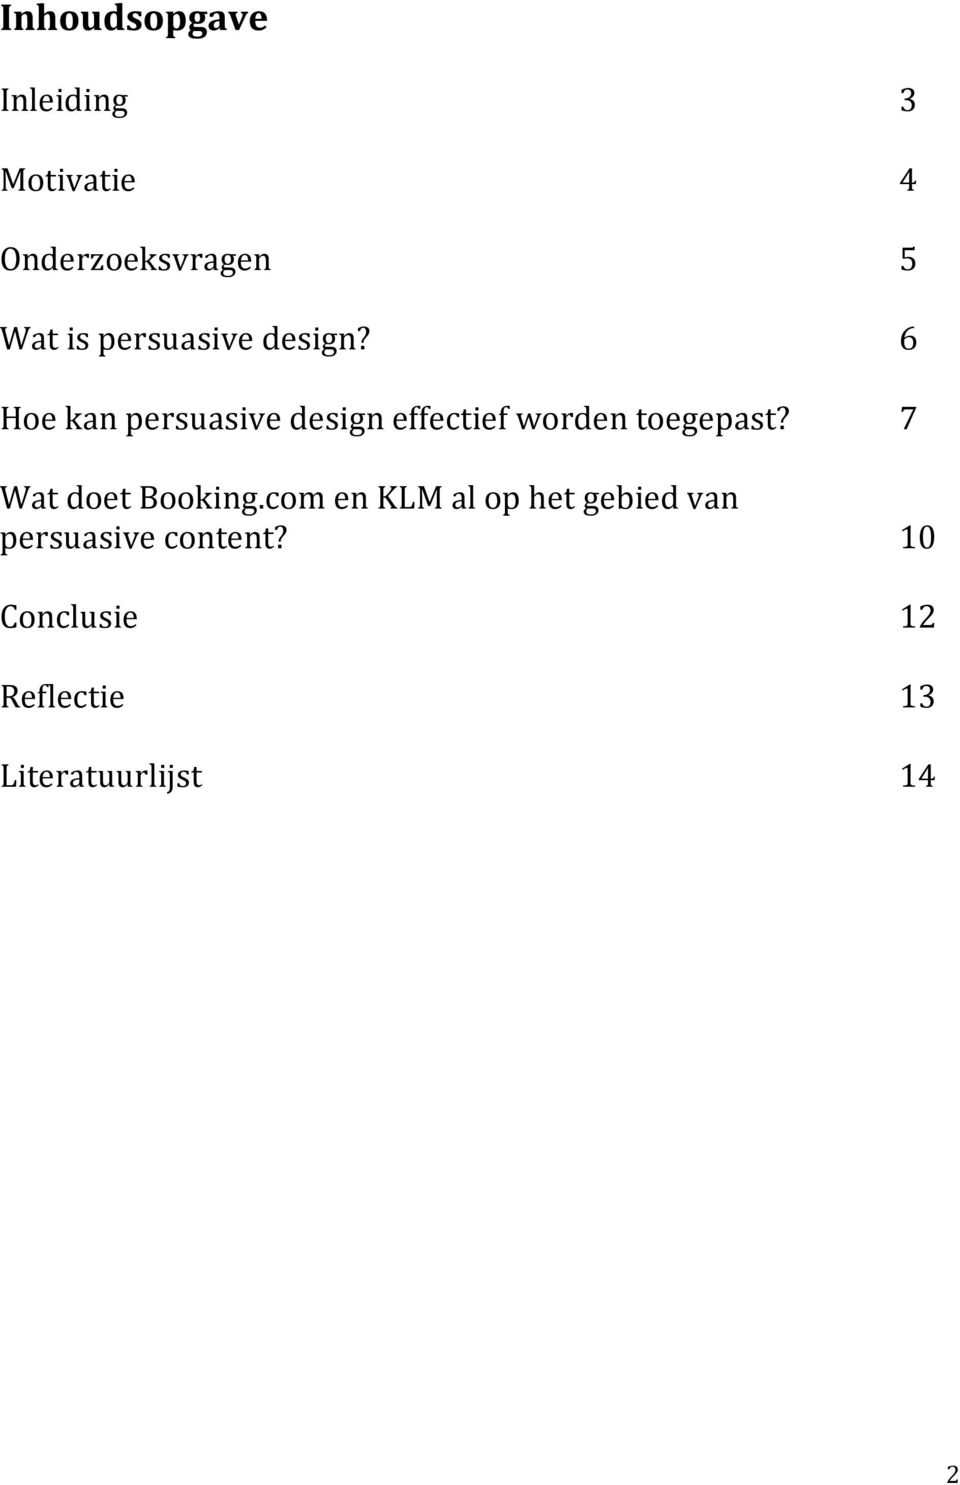 Hoe kan persuasive design effectief worden toegepast?